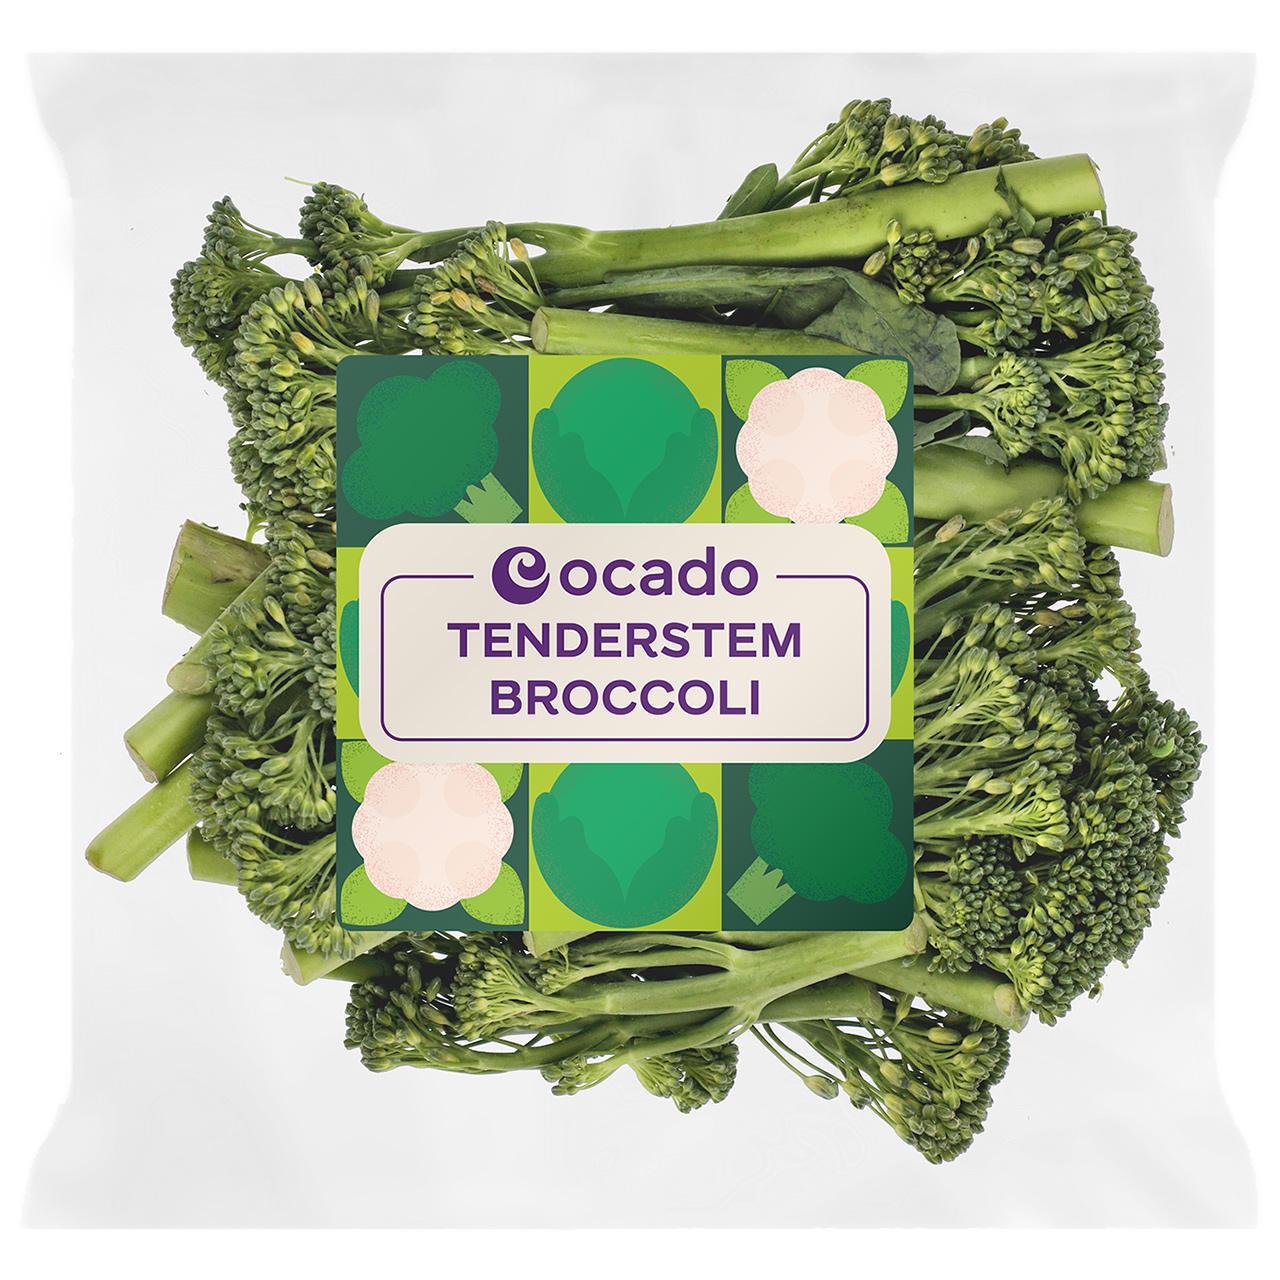 Ocado Tenderstem Broccoli 300g